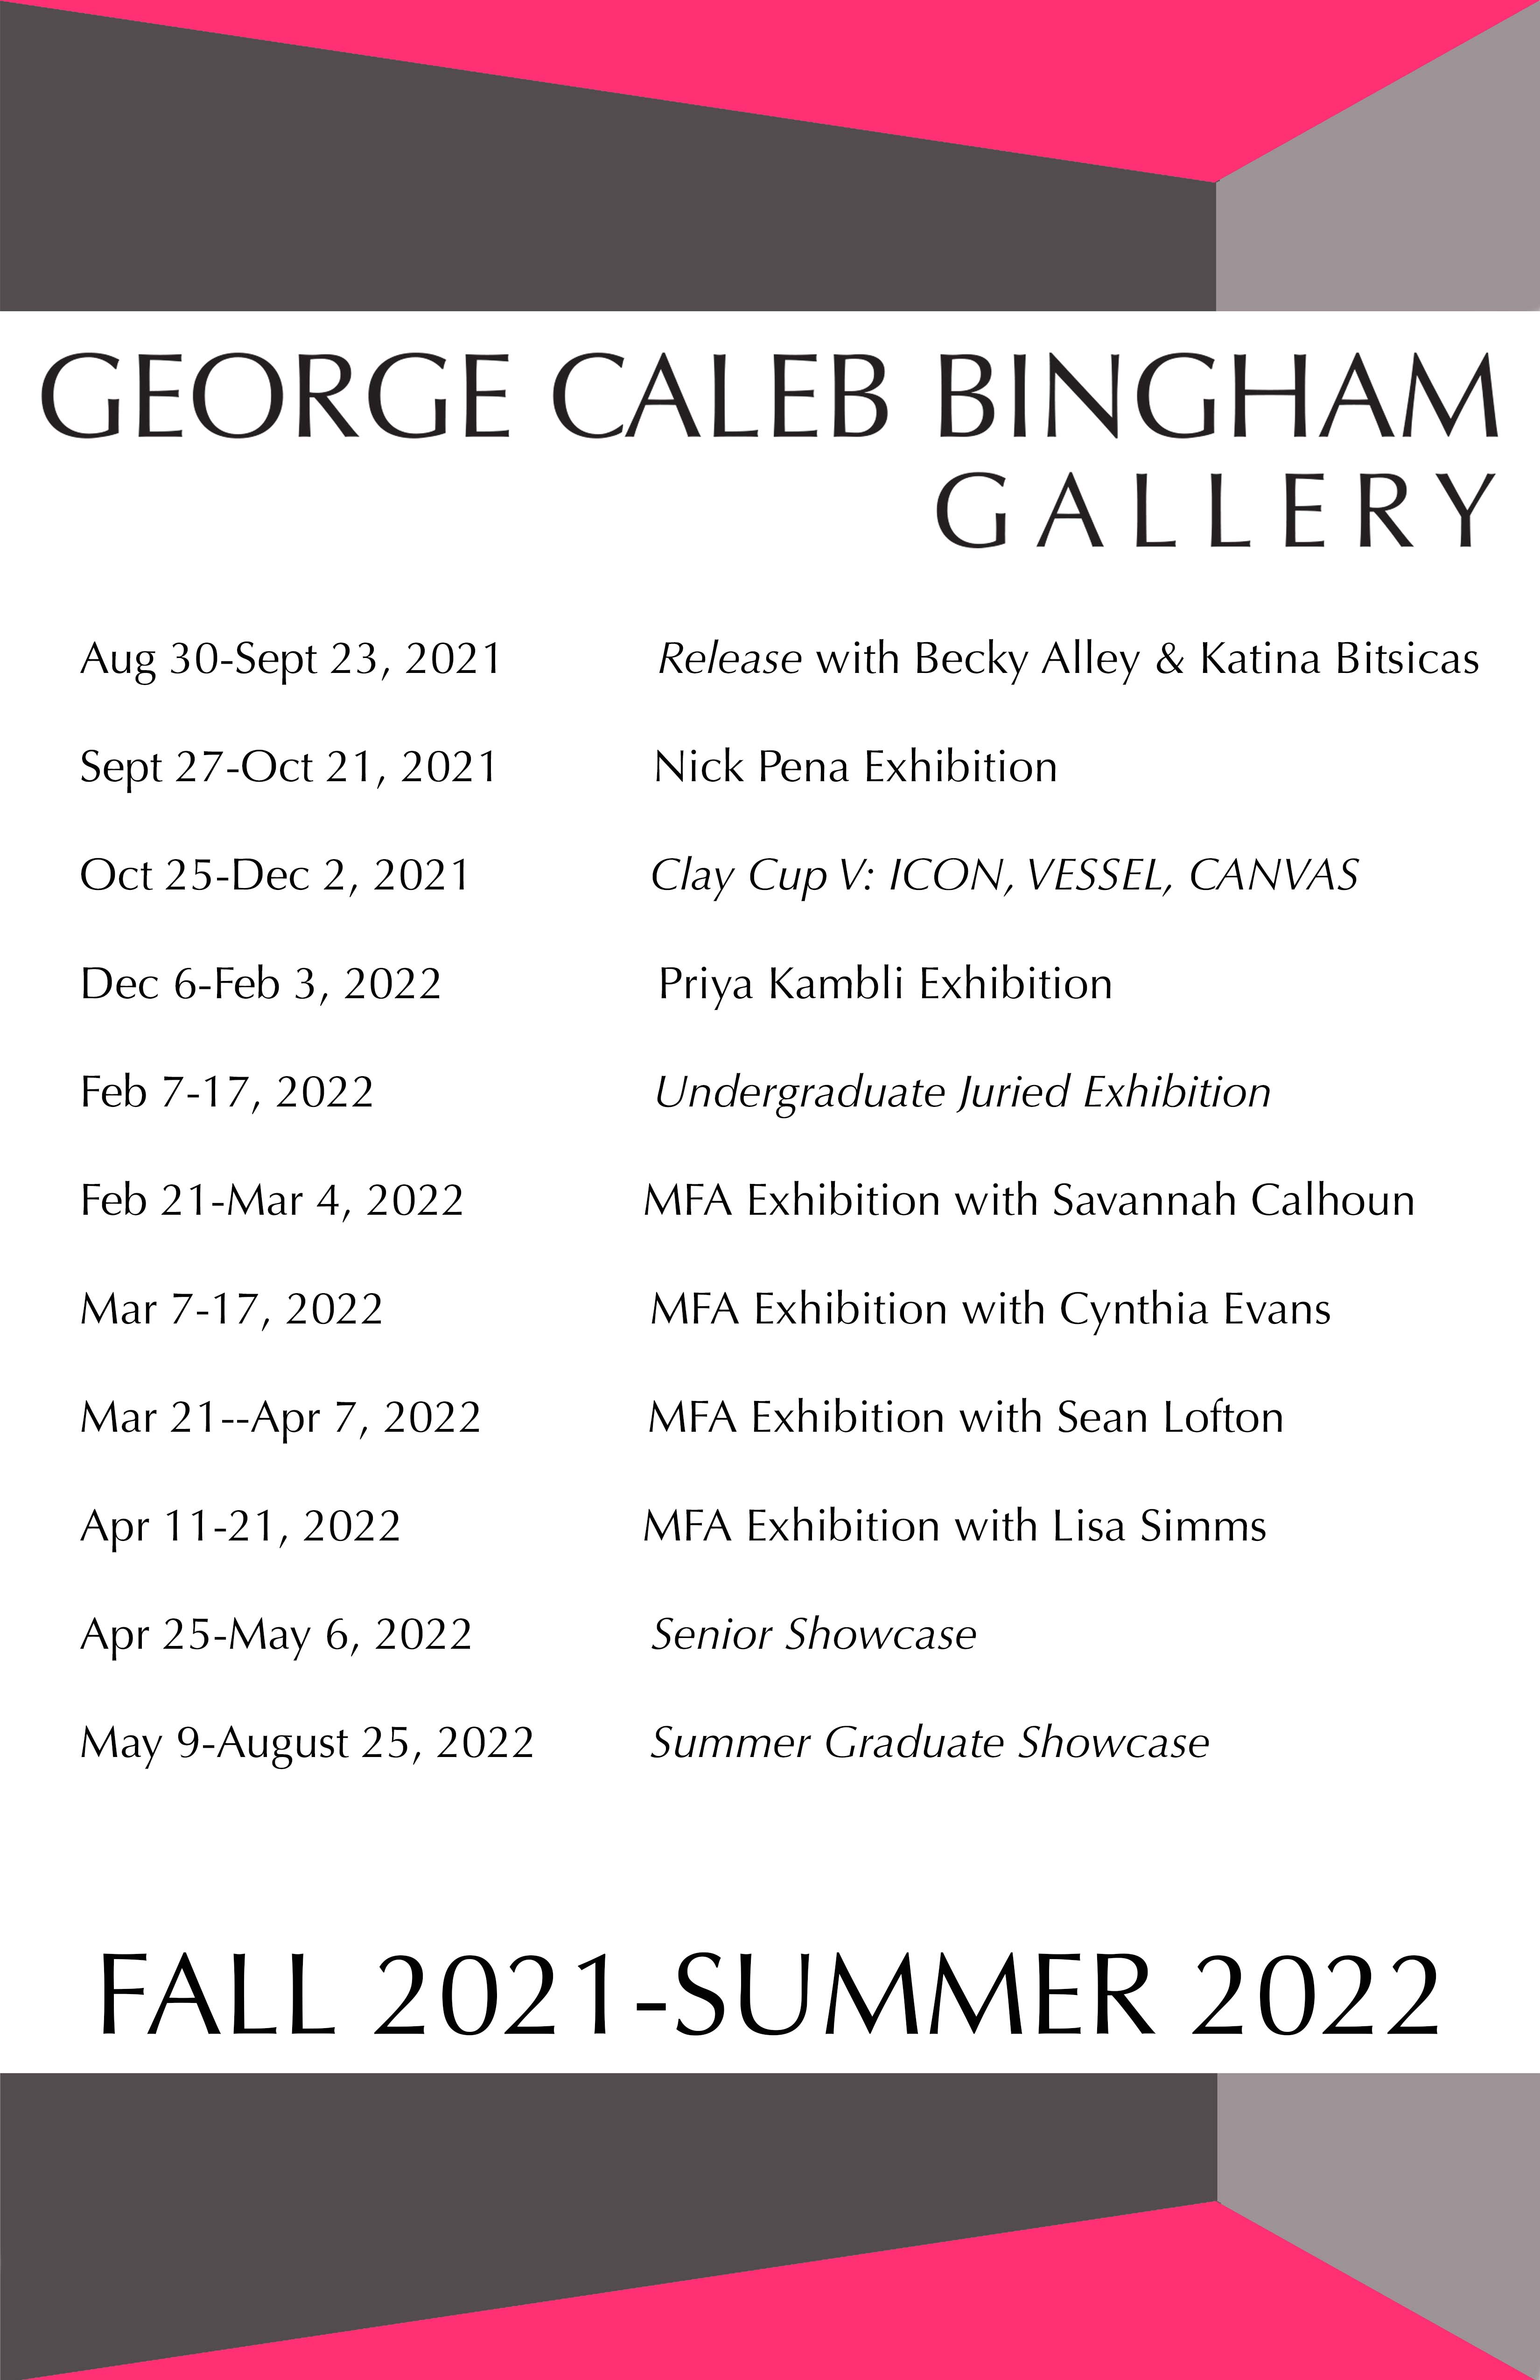 The George Caleb Bingham Gallery Schedule